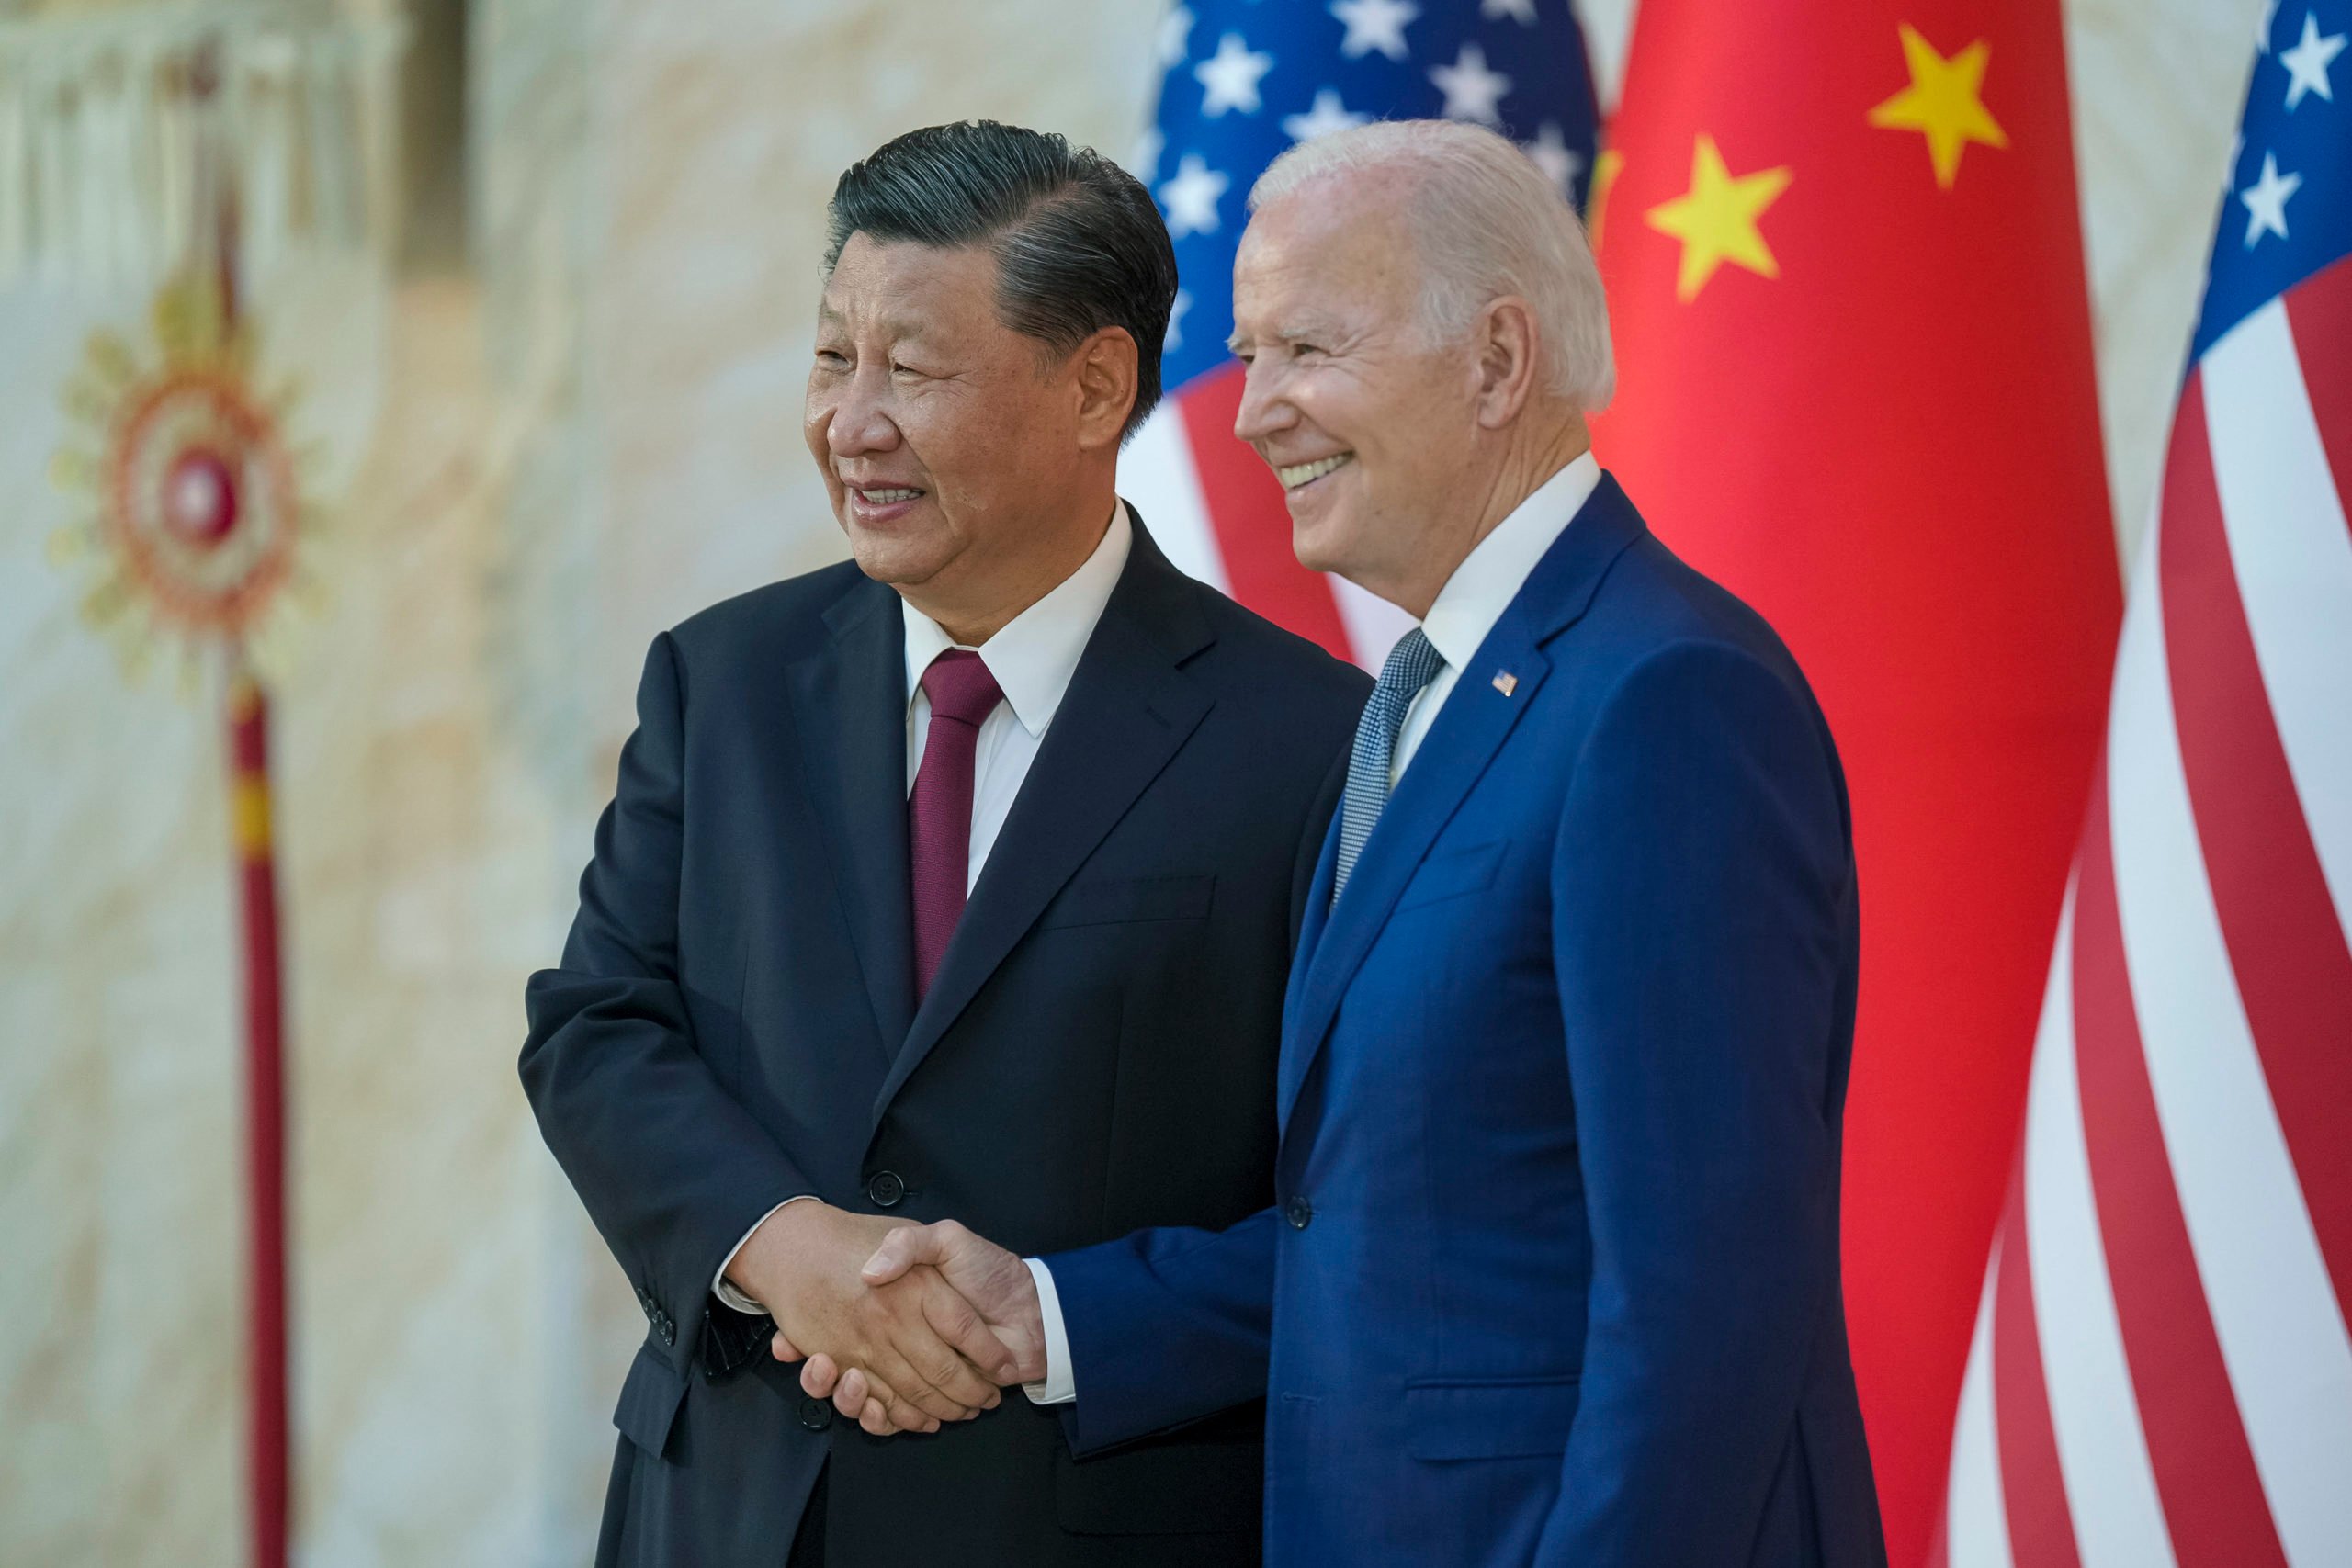 Joe Biden (EUA) e Xi Jinping (China) prometem triplicar geração de energia renovável até 2030, durante encontro em São Francisco (Foto: Governo dos EUA)